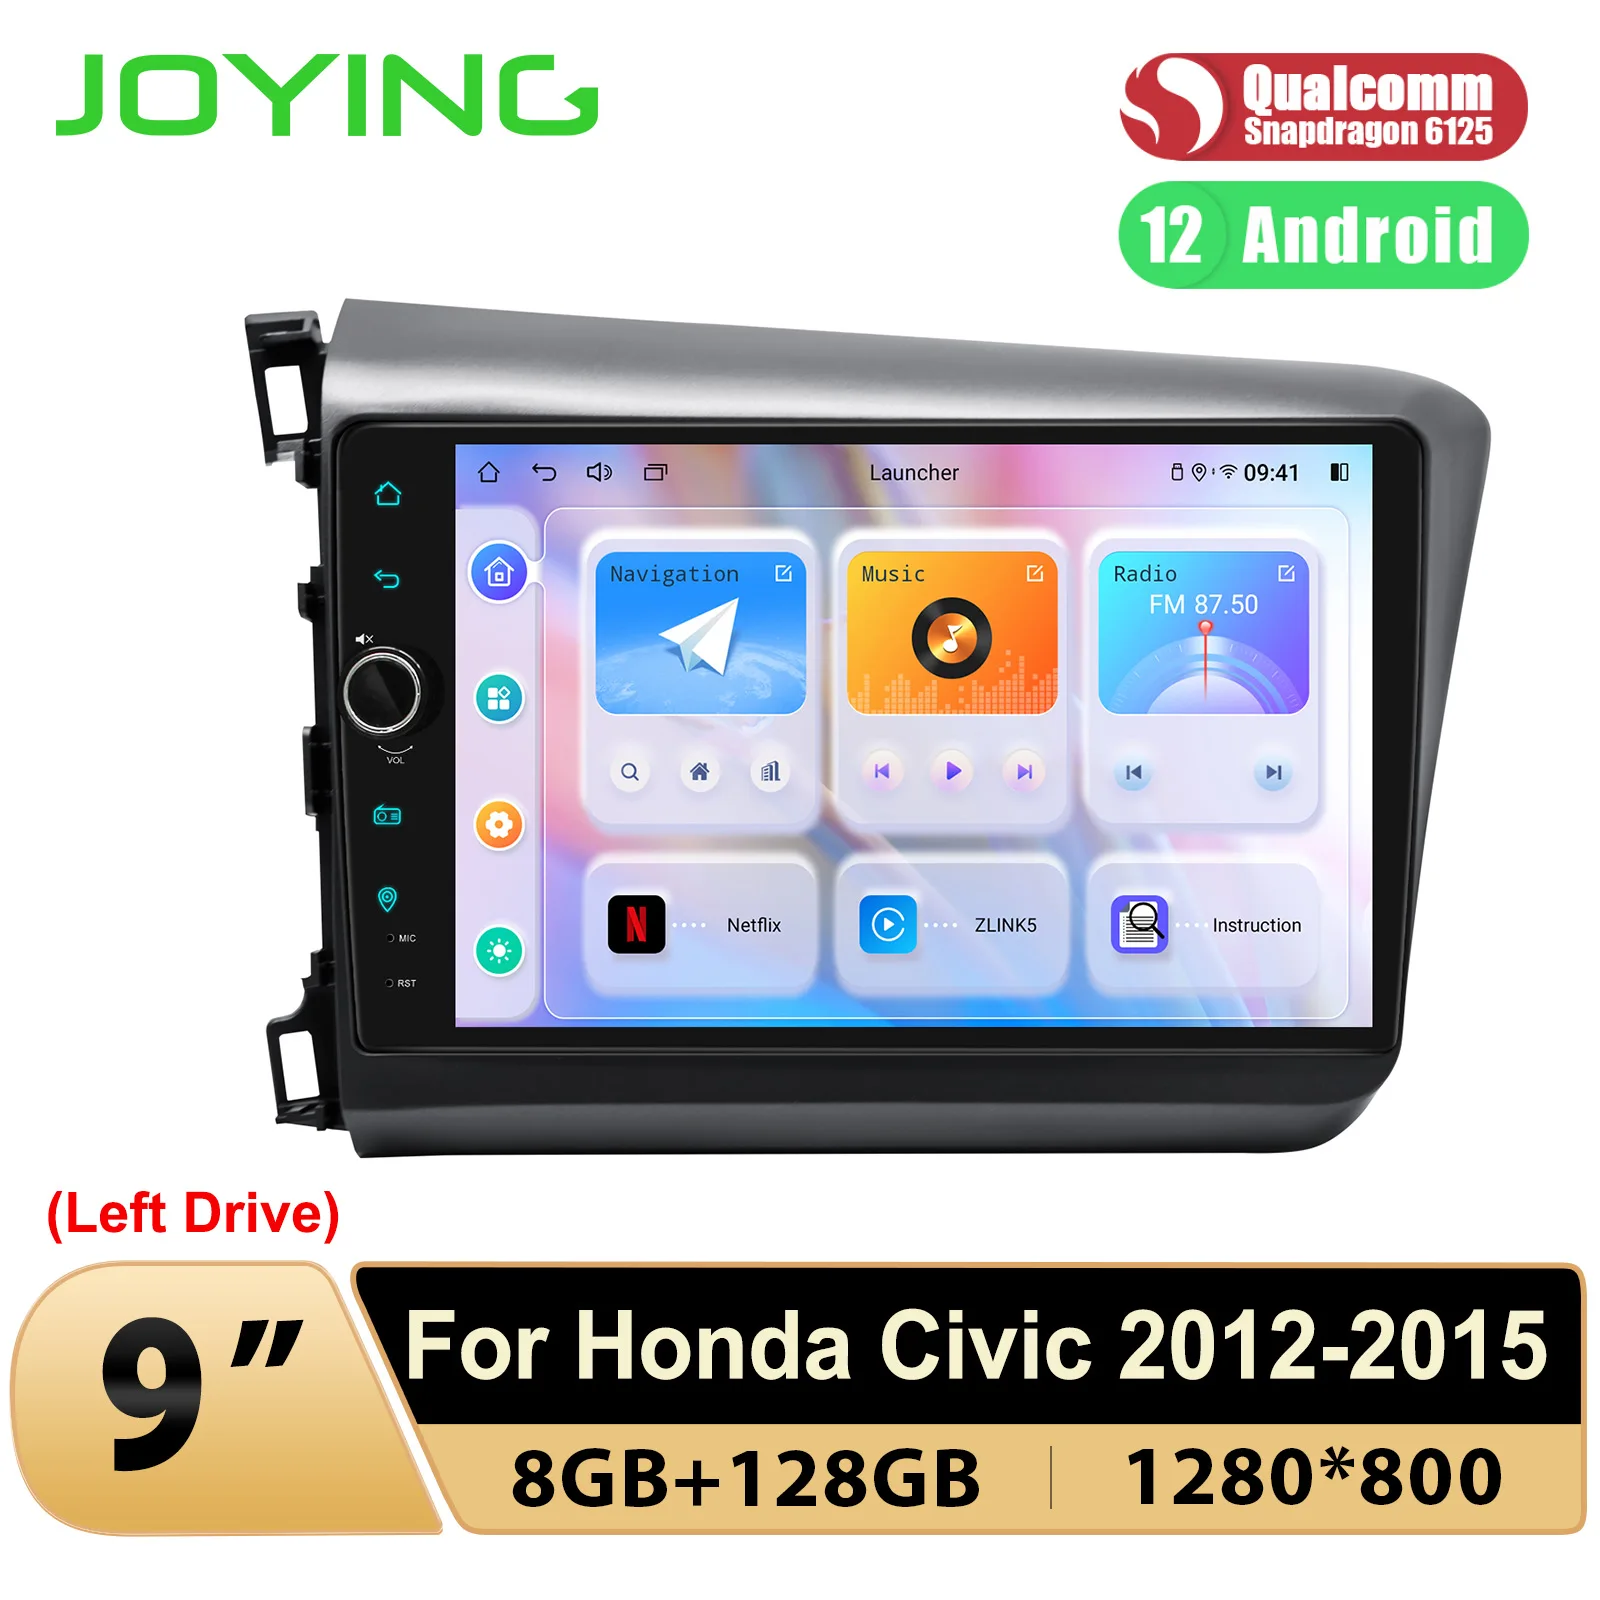 

Автомобильная магнитола JOYING с 9-дюймовым дисплеем, Android 12,0, DSP HDMI, для Honda Civic 2012 -2015